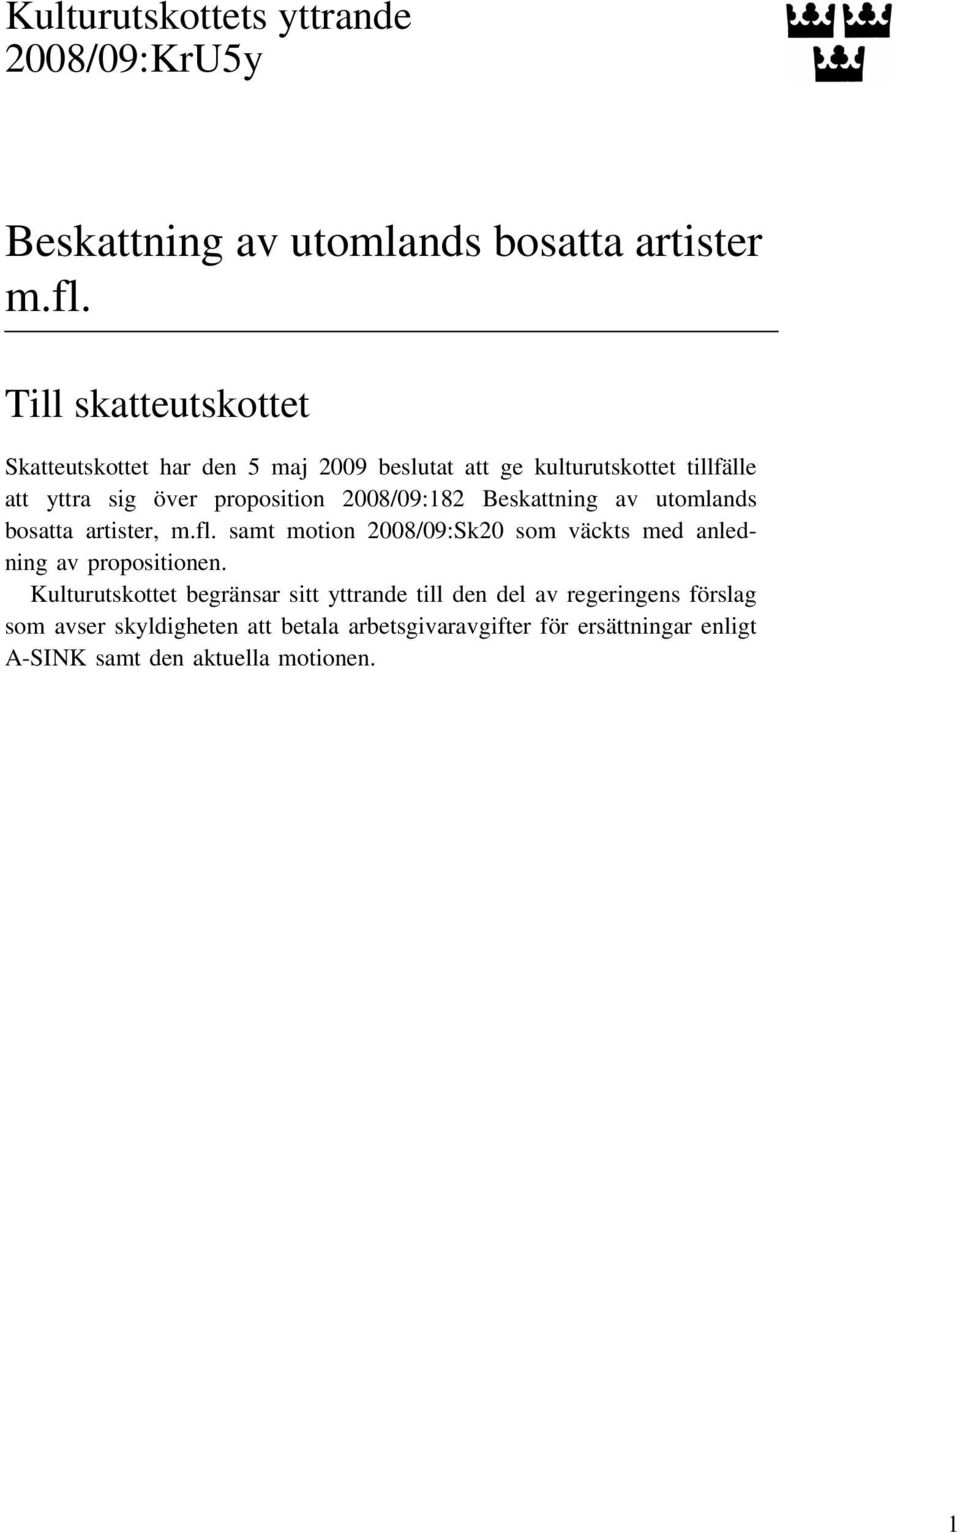 2008/09:182 Beskattning av utomlands bosatta artister, m.fl. samt motion 2008/09:Sk20 som väckts med anledning av propositionen.